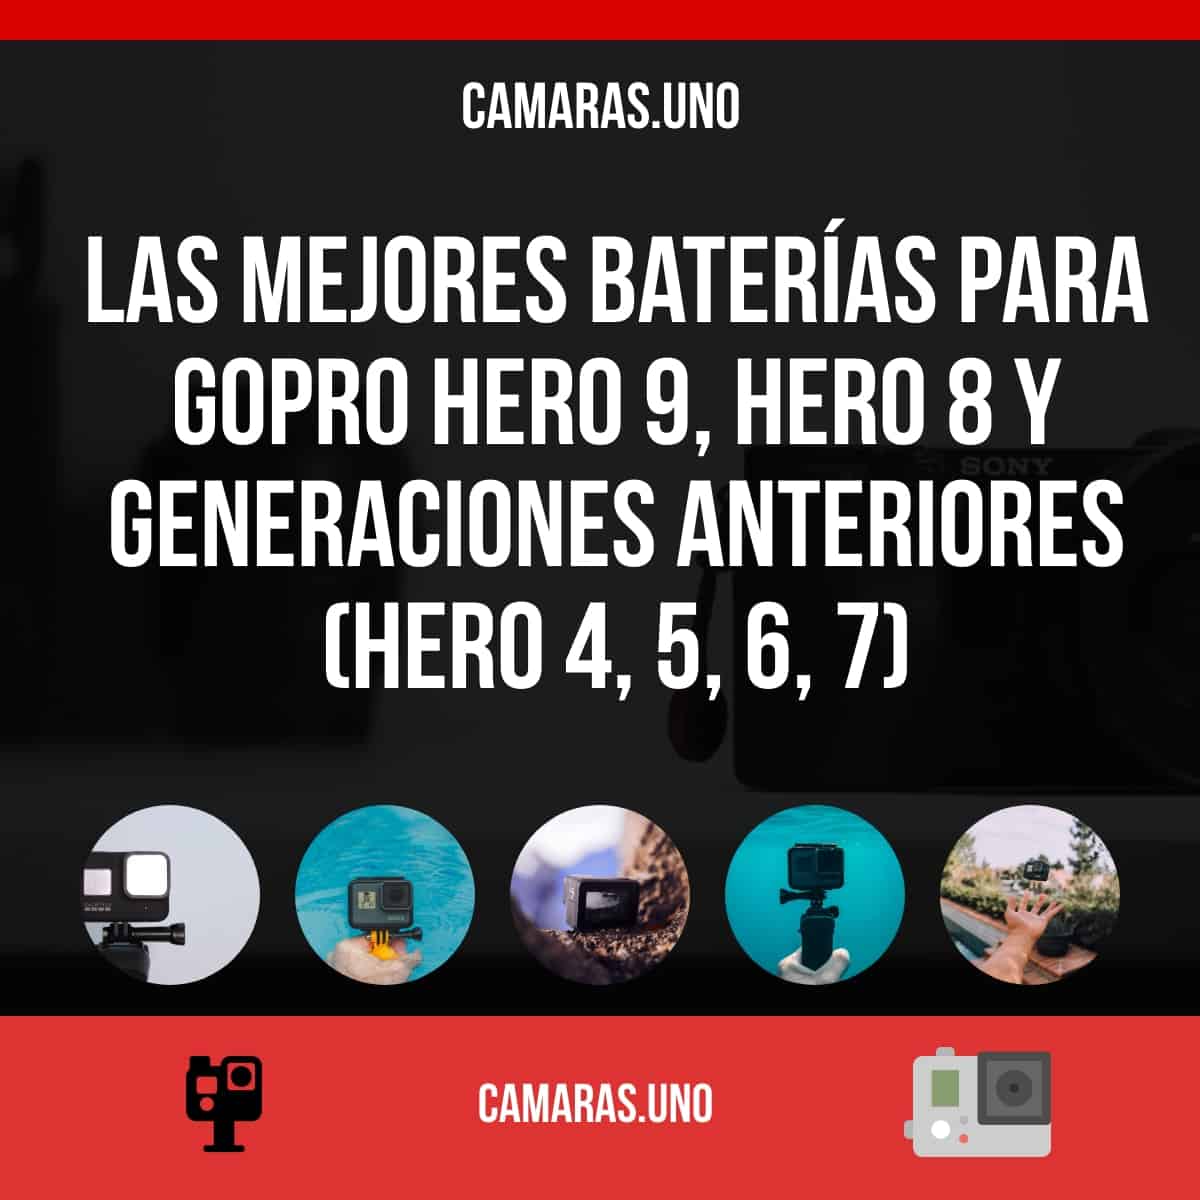 Las mejores GoPro Hero10, HERO 9, HERO 8 y generaciones